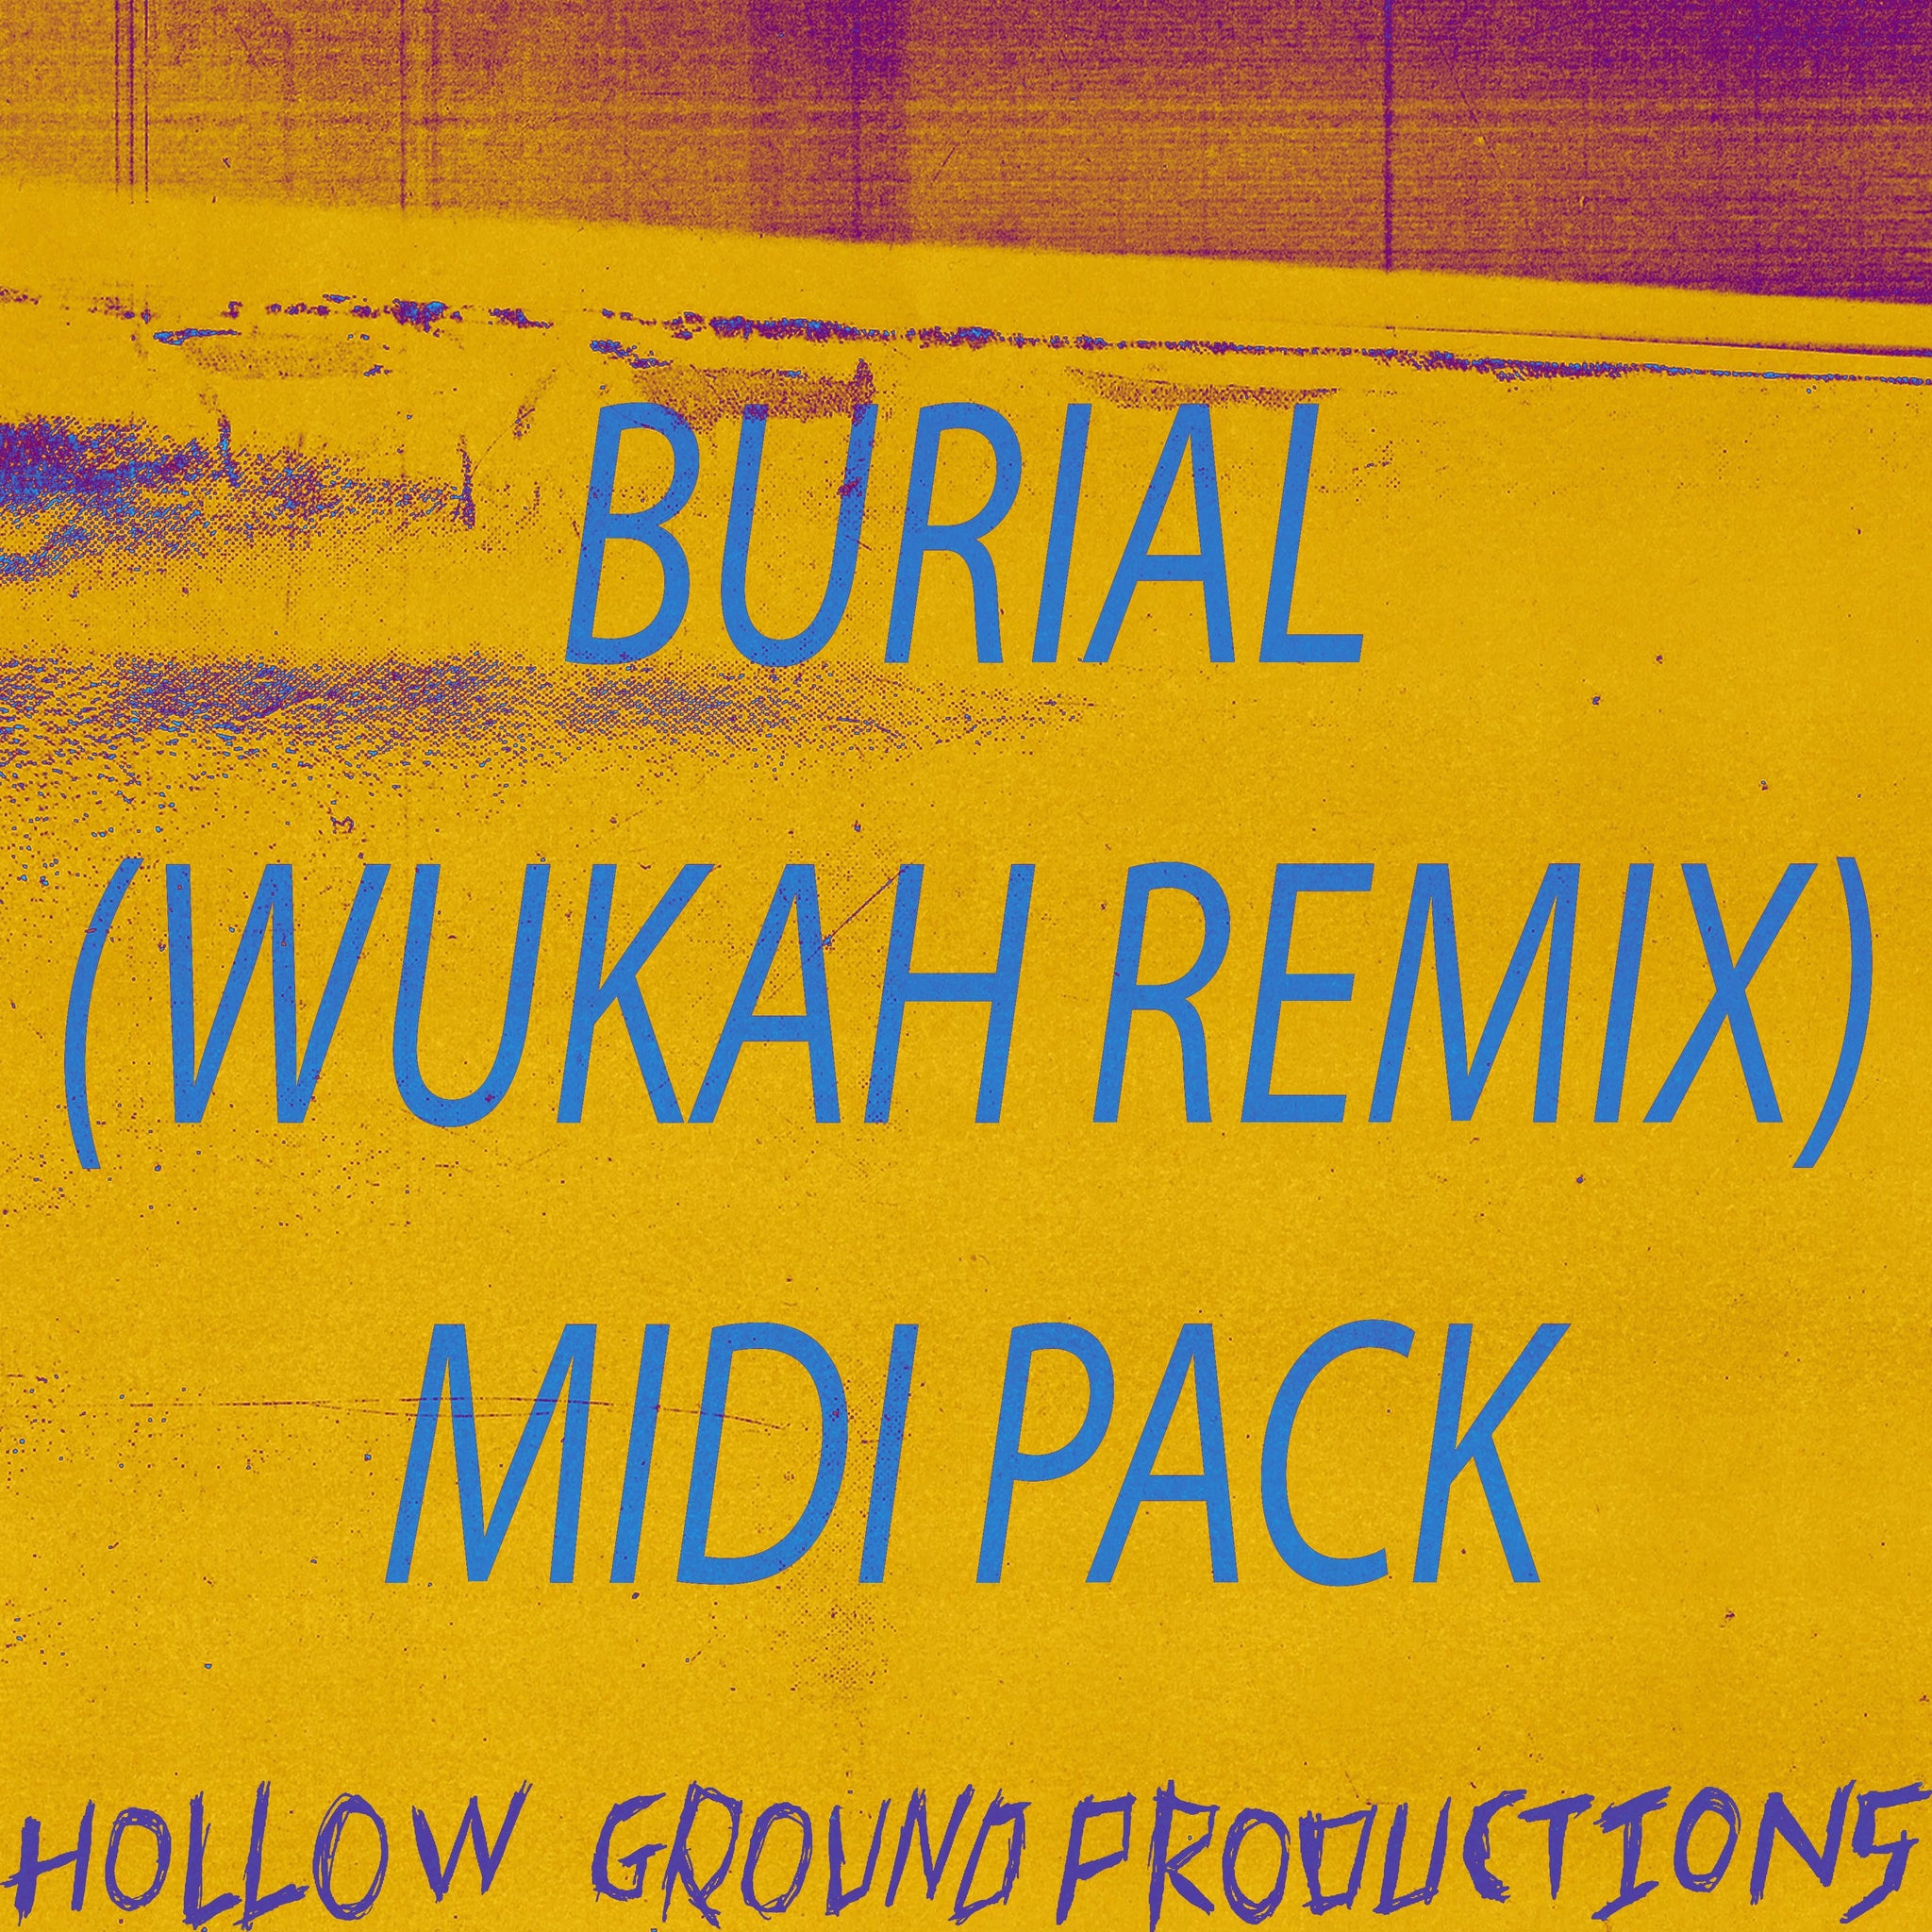 Burial Wukah Remix Midi Pack - Hollow Ground Productions (Wukah) - Scraps Audio